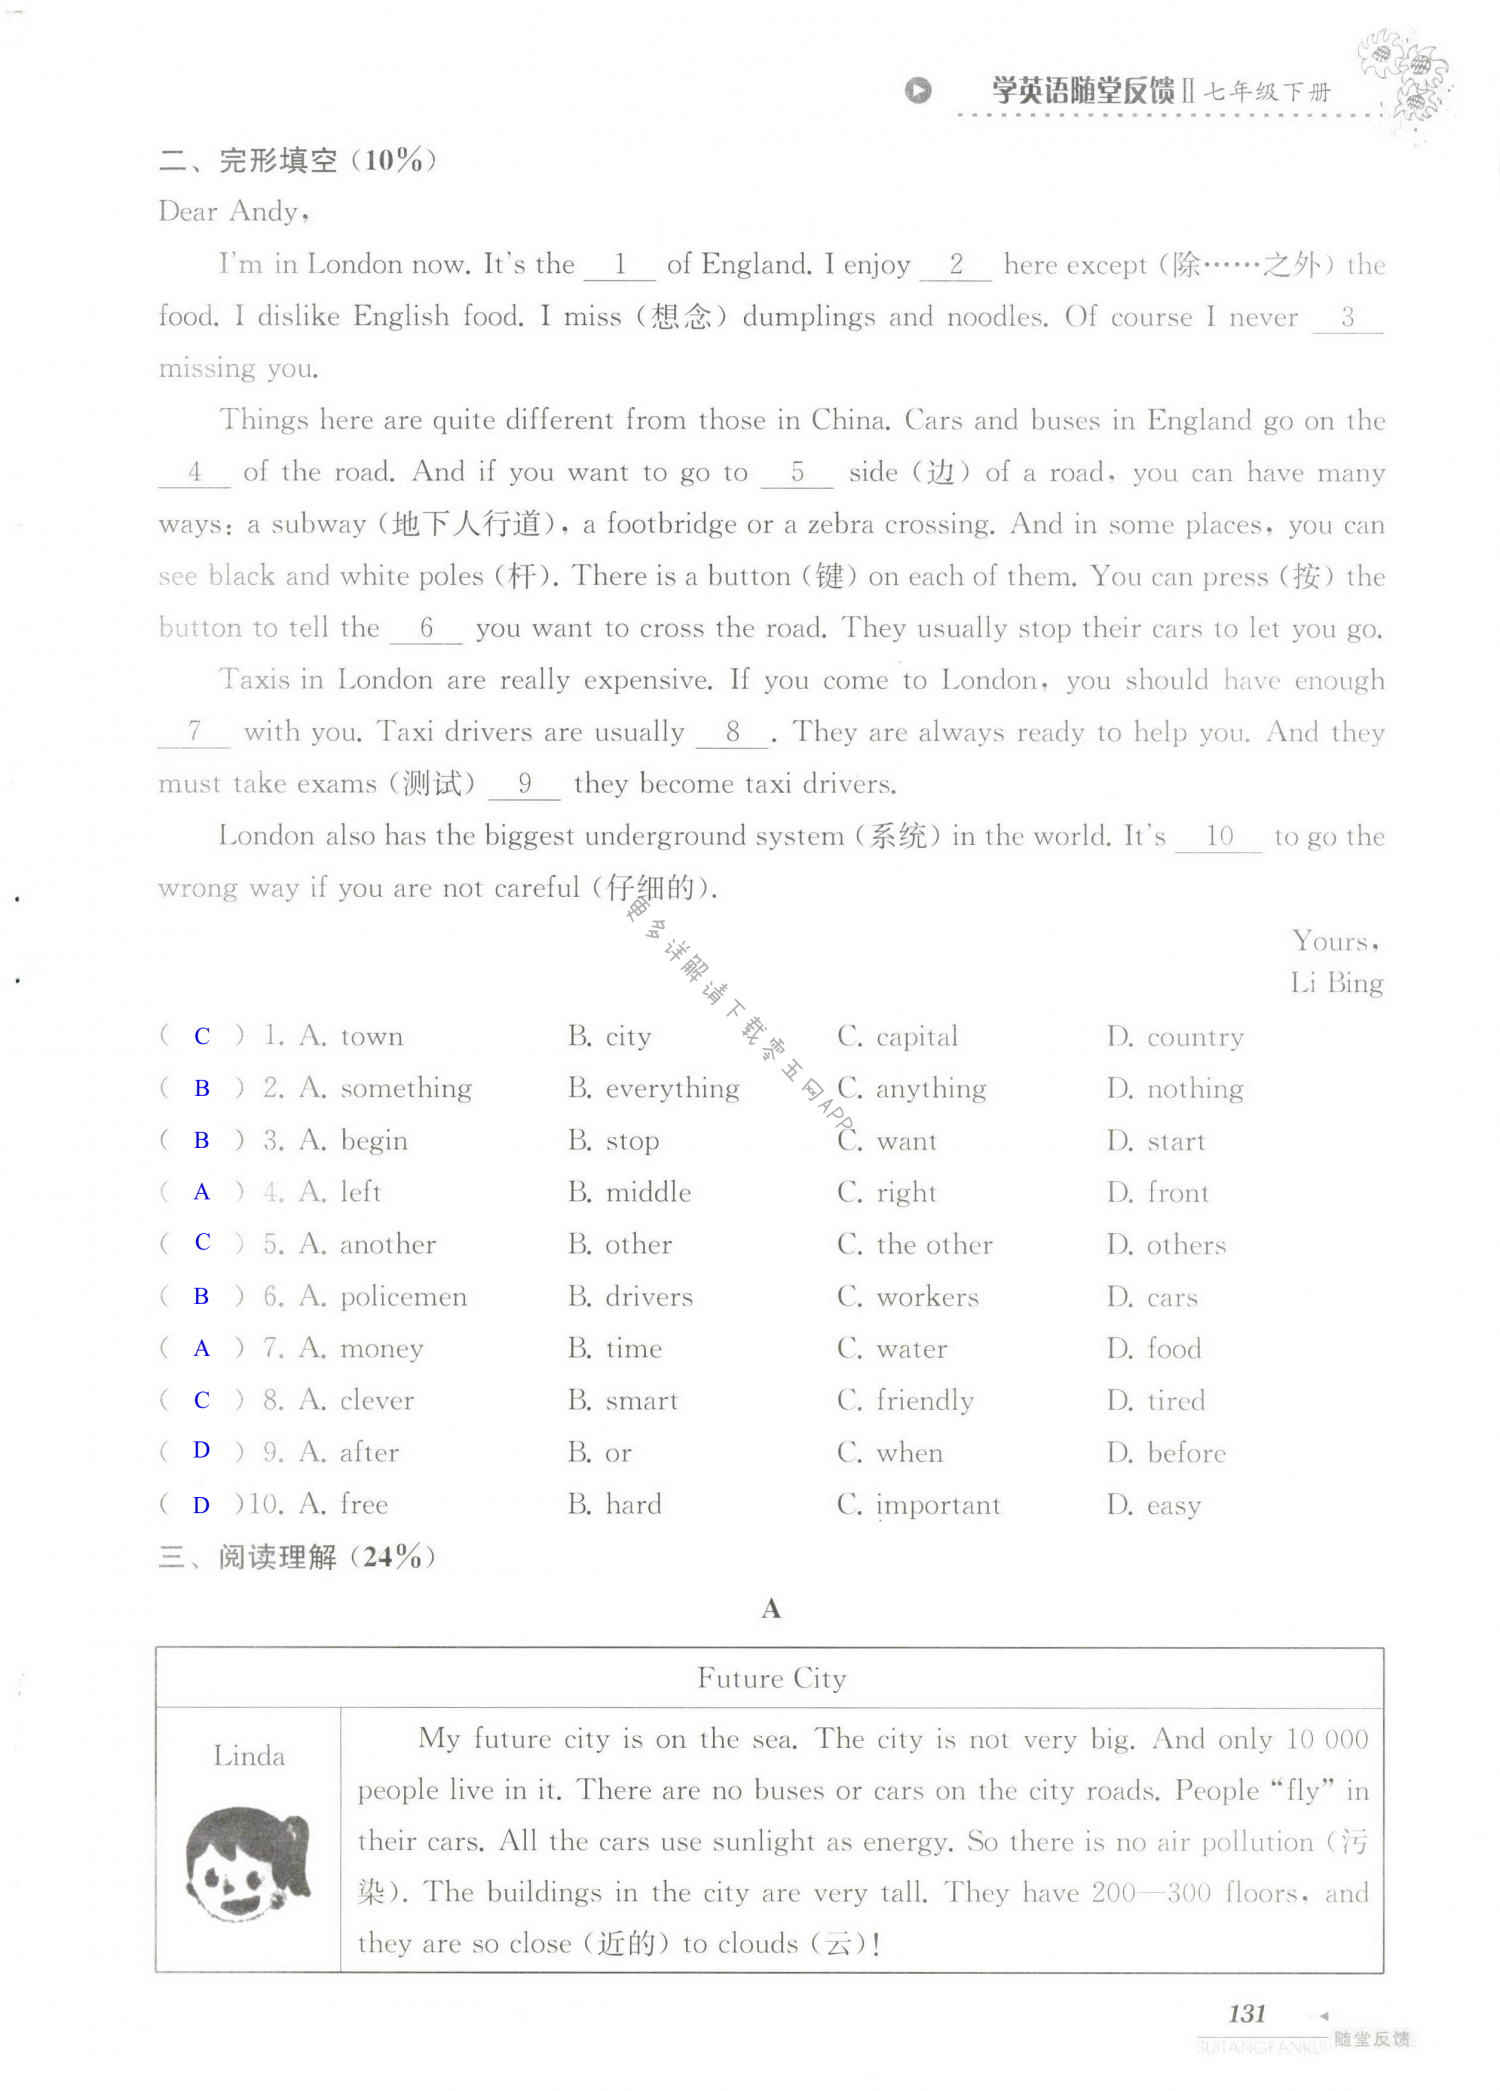 单元综合测试卷   Test for Unit 1 of 7B - 第131页